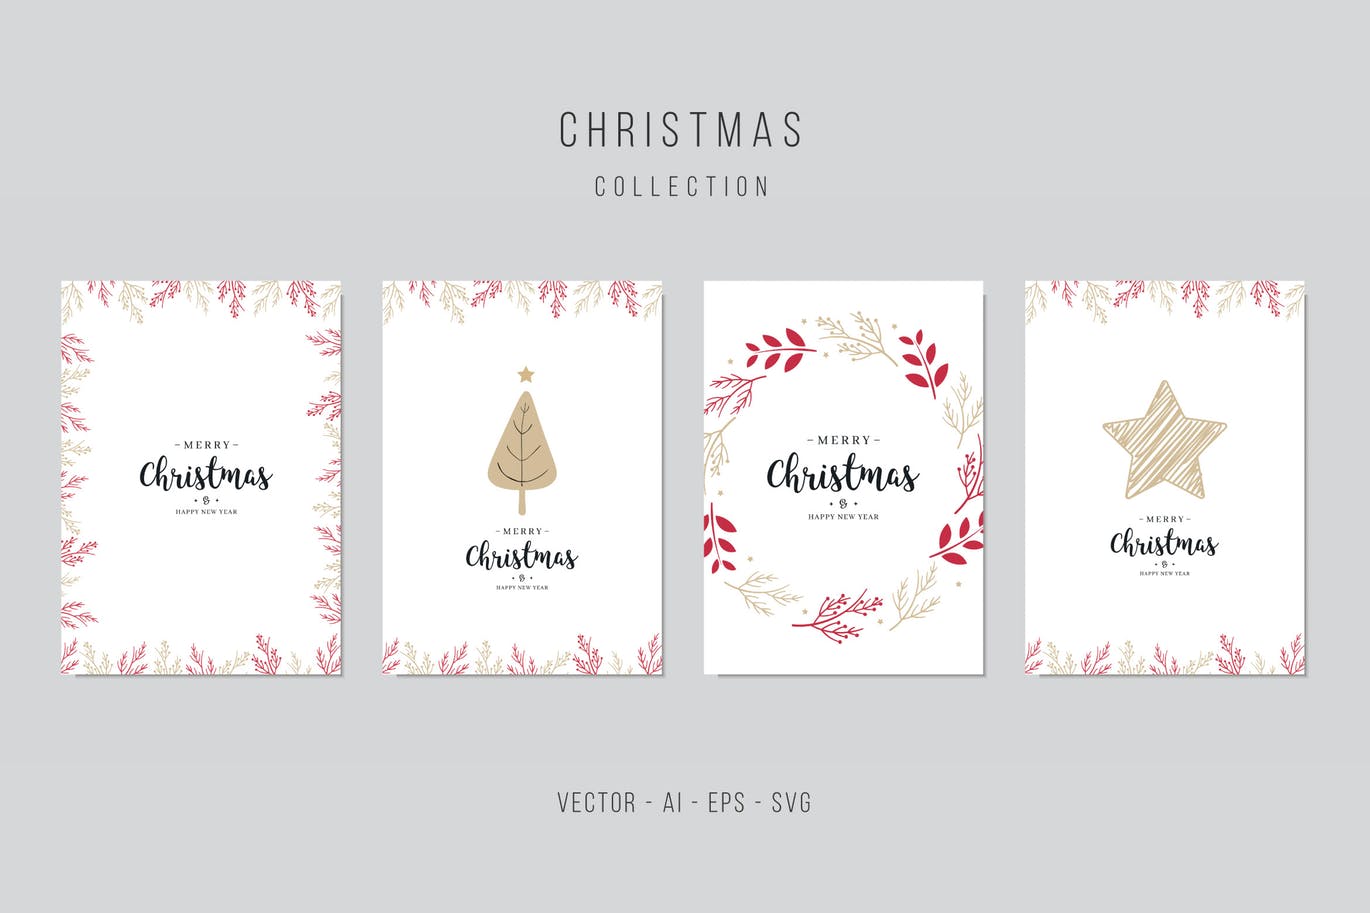 圣诞贺卡矢量设计模板素材v6 Christmas Vector Card Set. vol.6插图